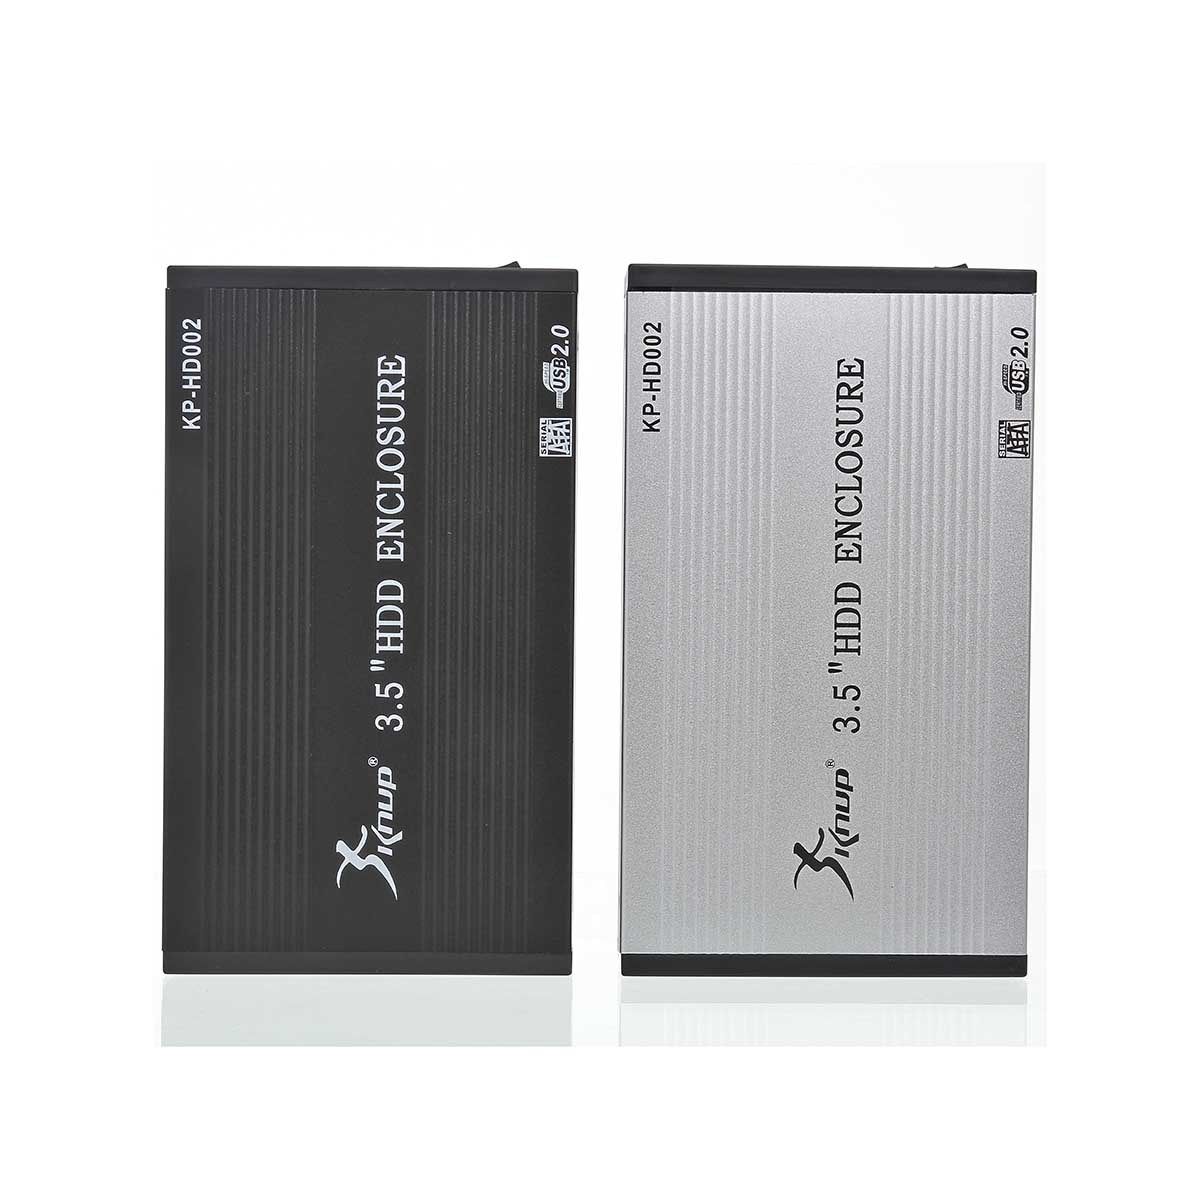 Case Para HD 3,5″ USB 2.0 KP-HD002 - Mega Computadores